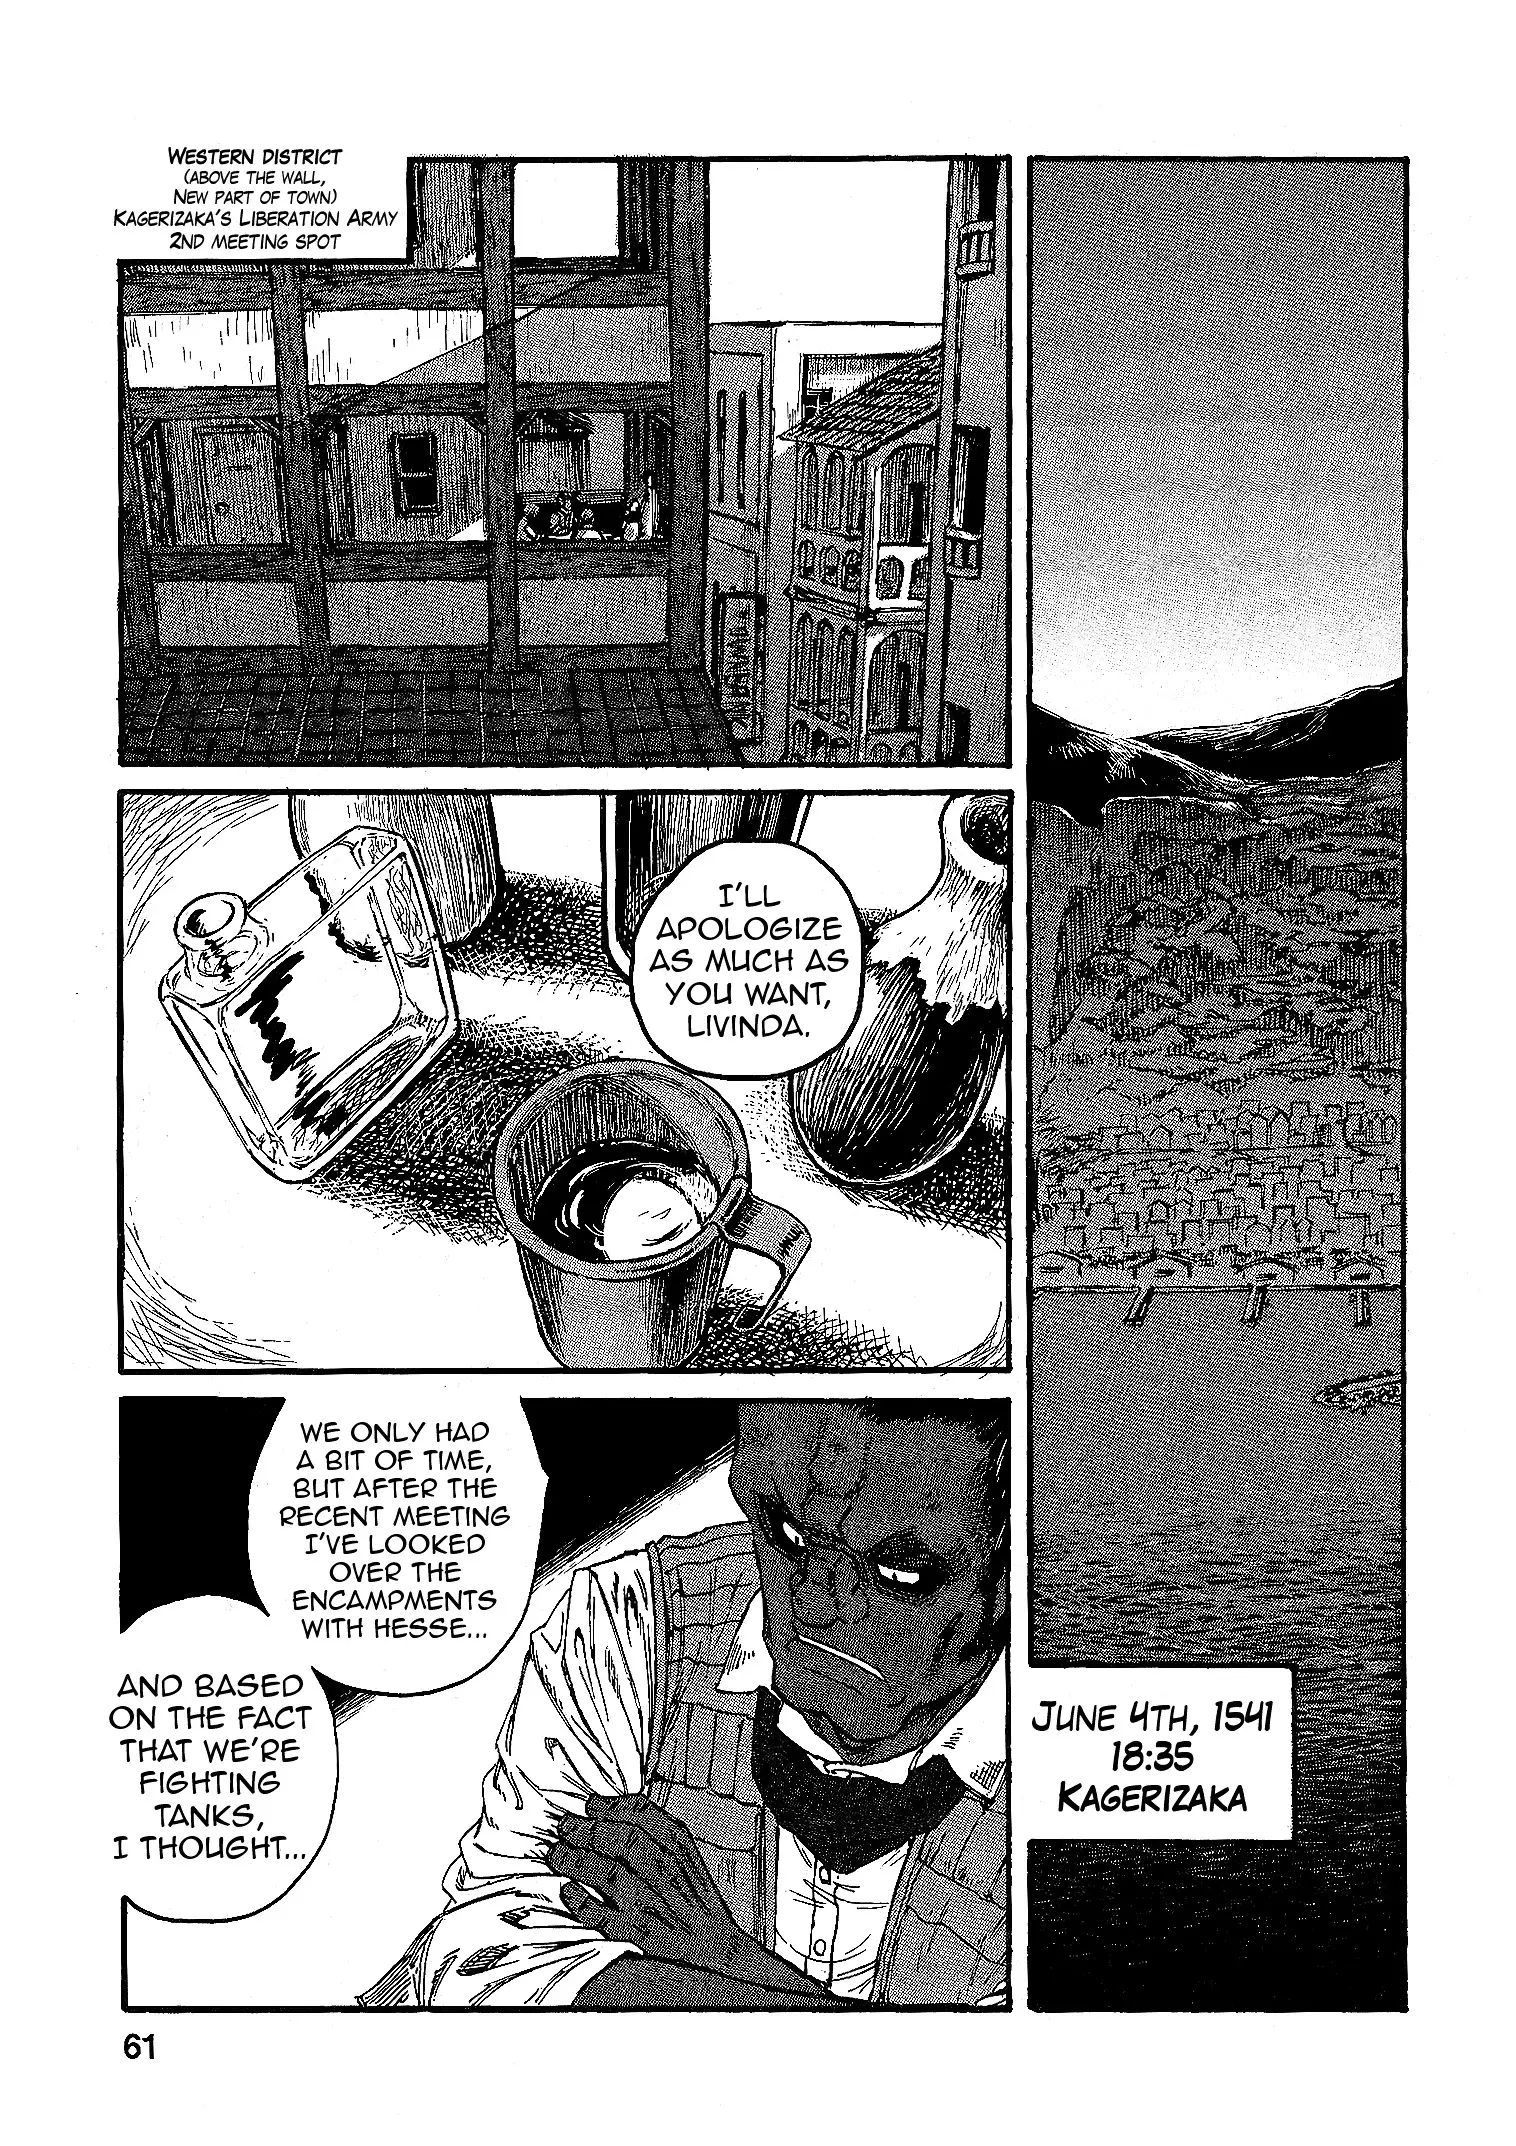 Groundless - Sekigan No Sogekihei - 15 page 25-78a6d53a